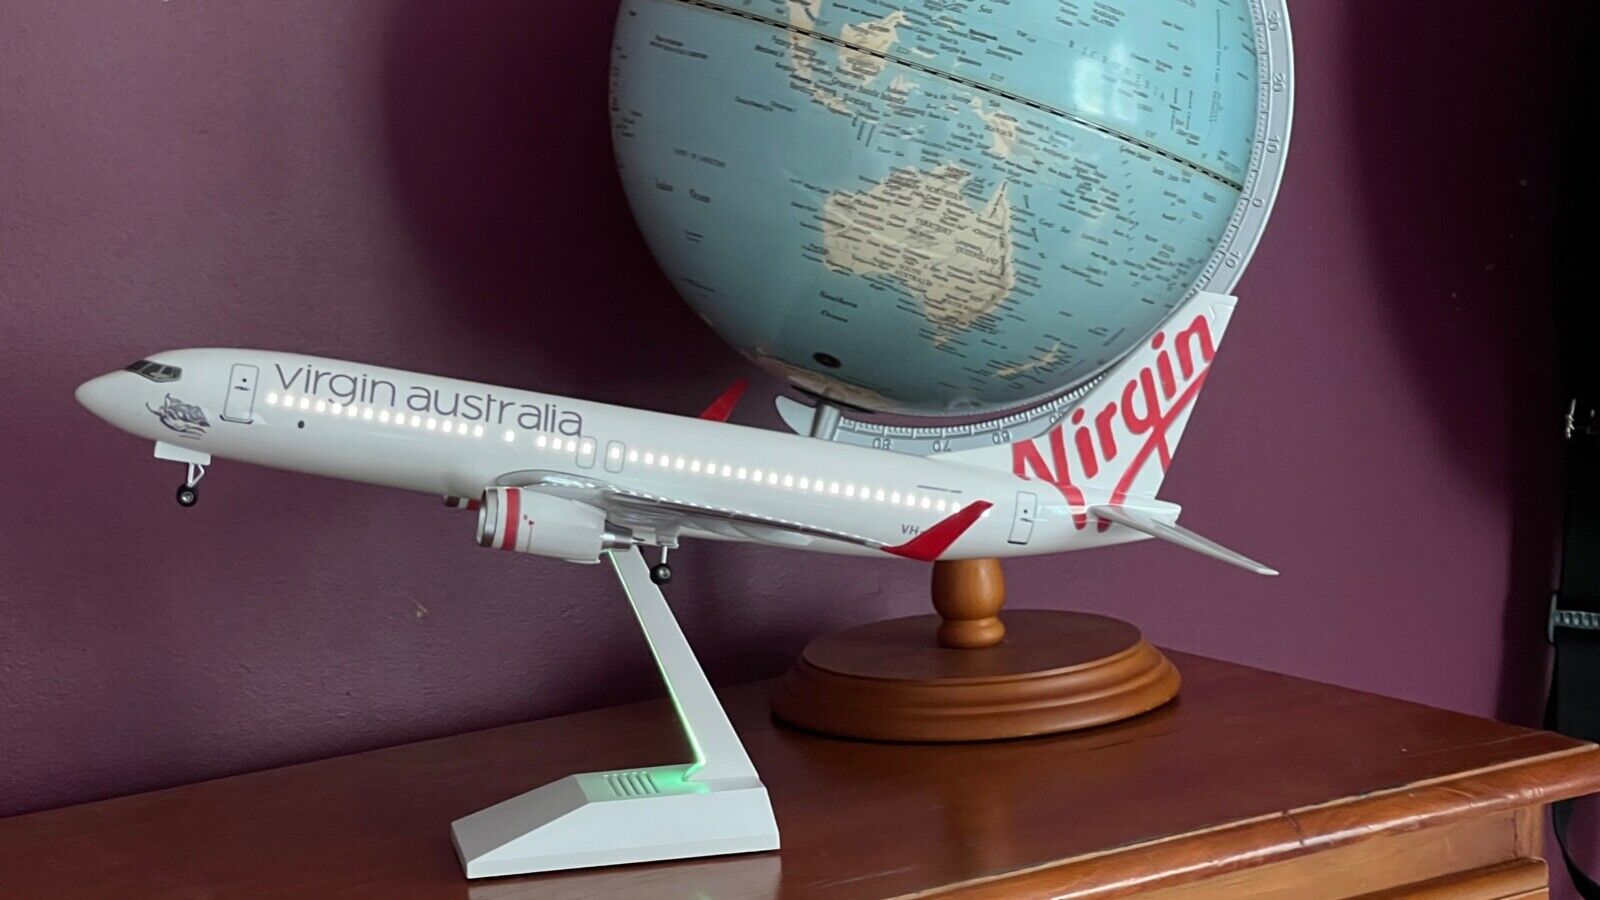 Virgin Australia Large Plane Model 737 LED Model Airplane 45Cm VHYFU White Stnd